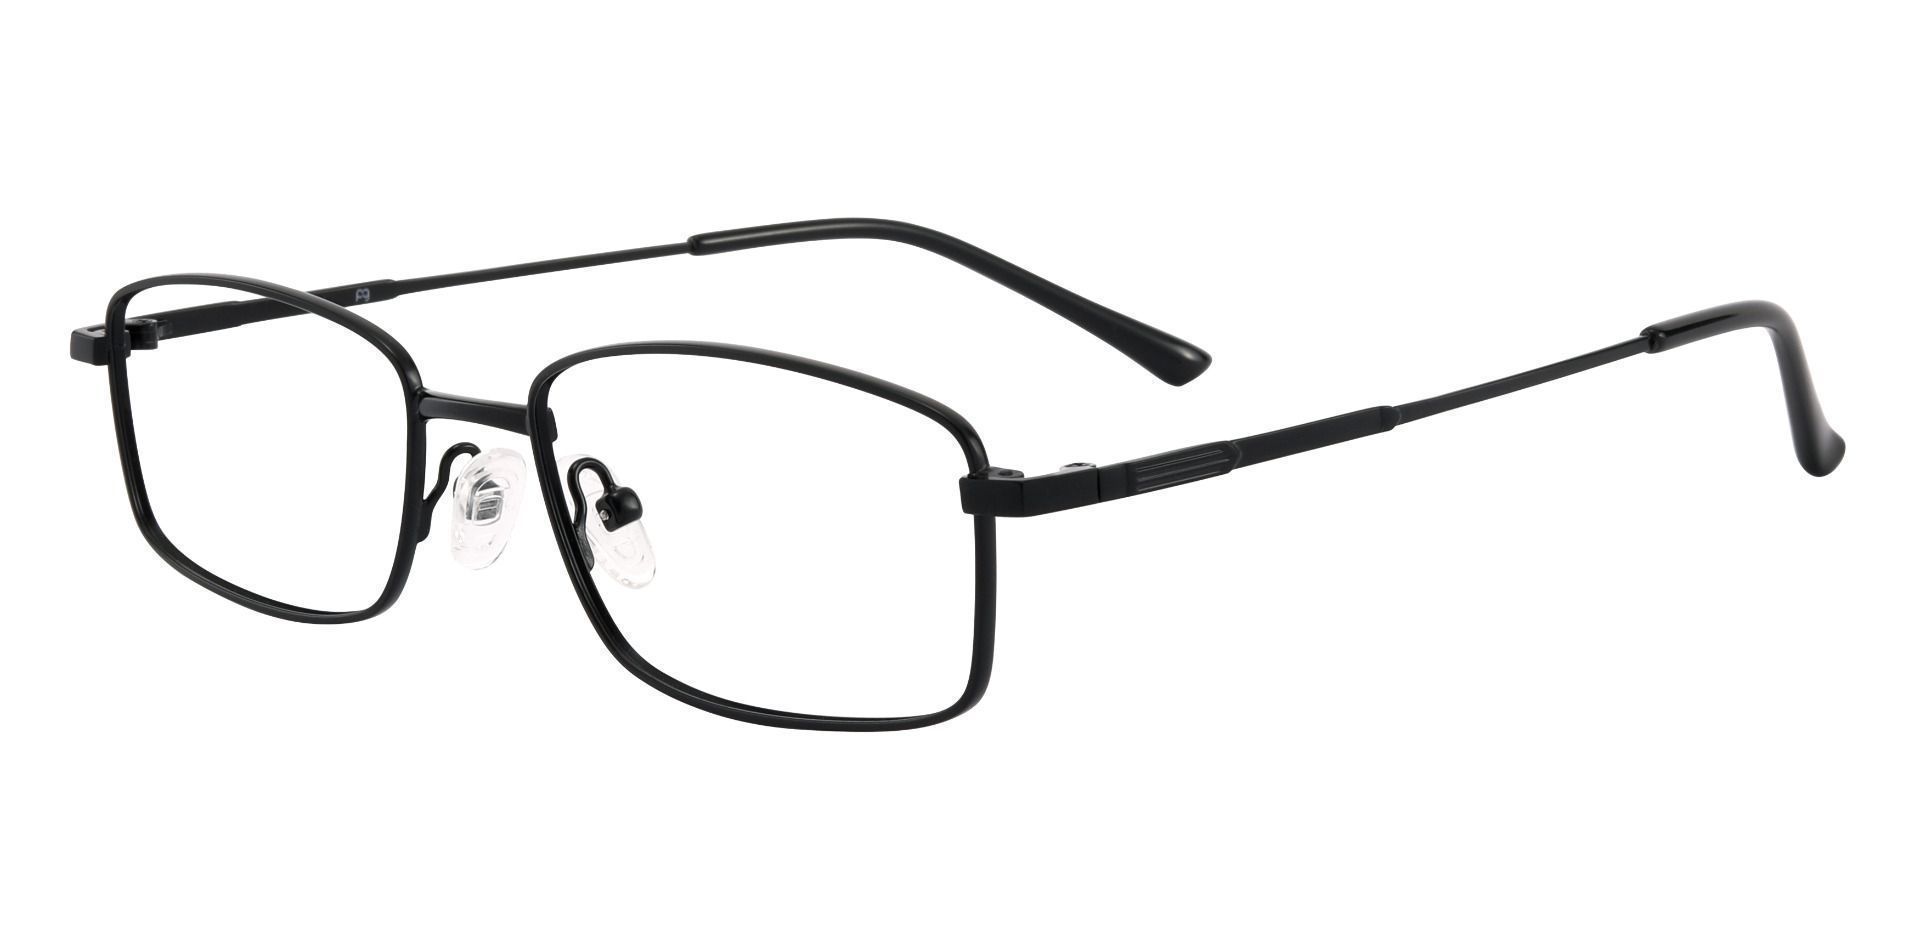 Fletcher Rectangle Progressive Glasses - Black